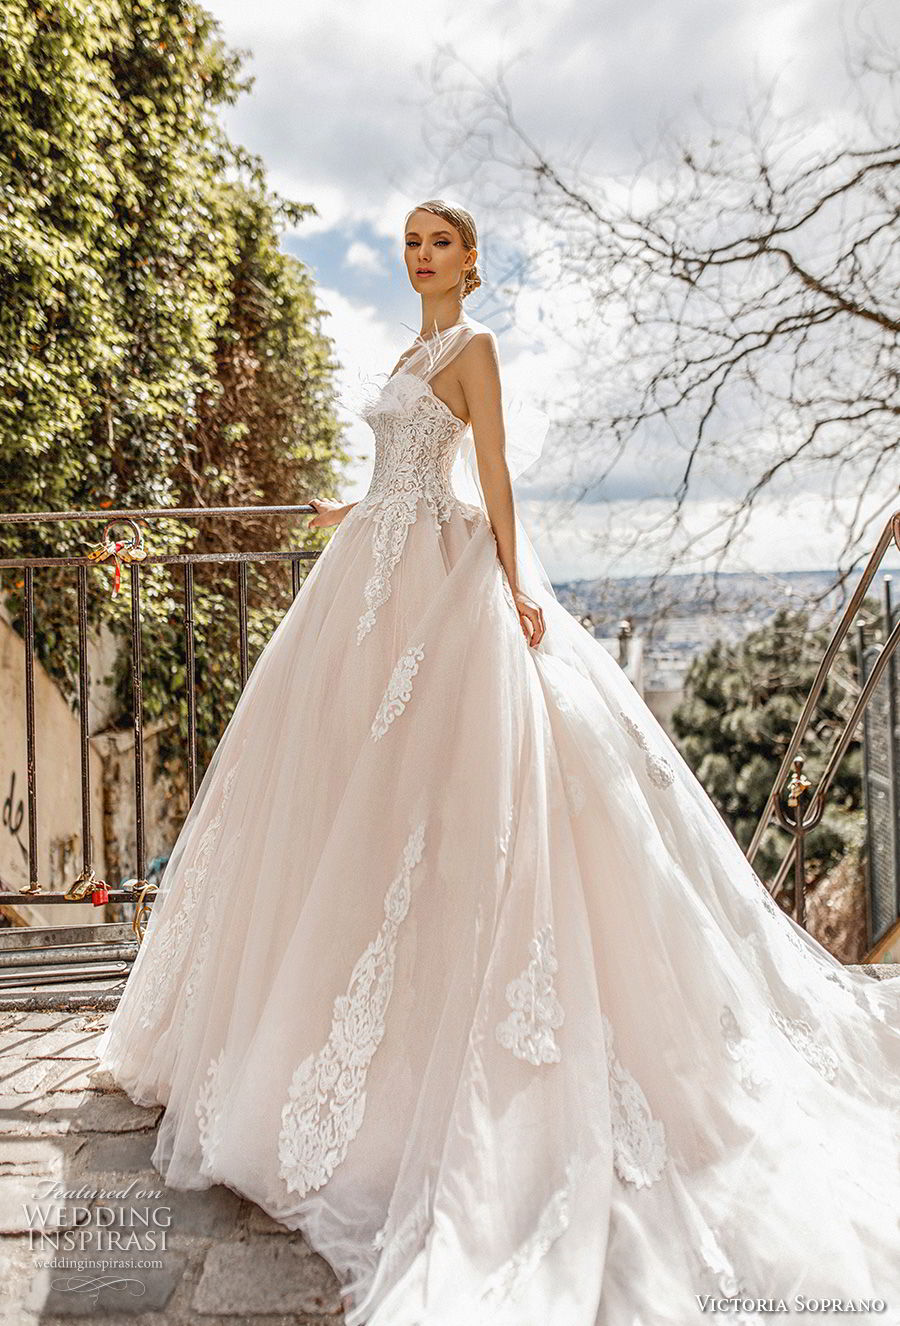  Victoria  Soprano  2019  Wedding  Dresses   Love in Paris 